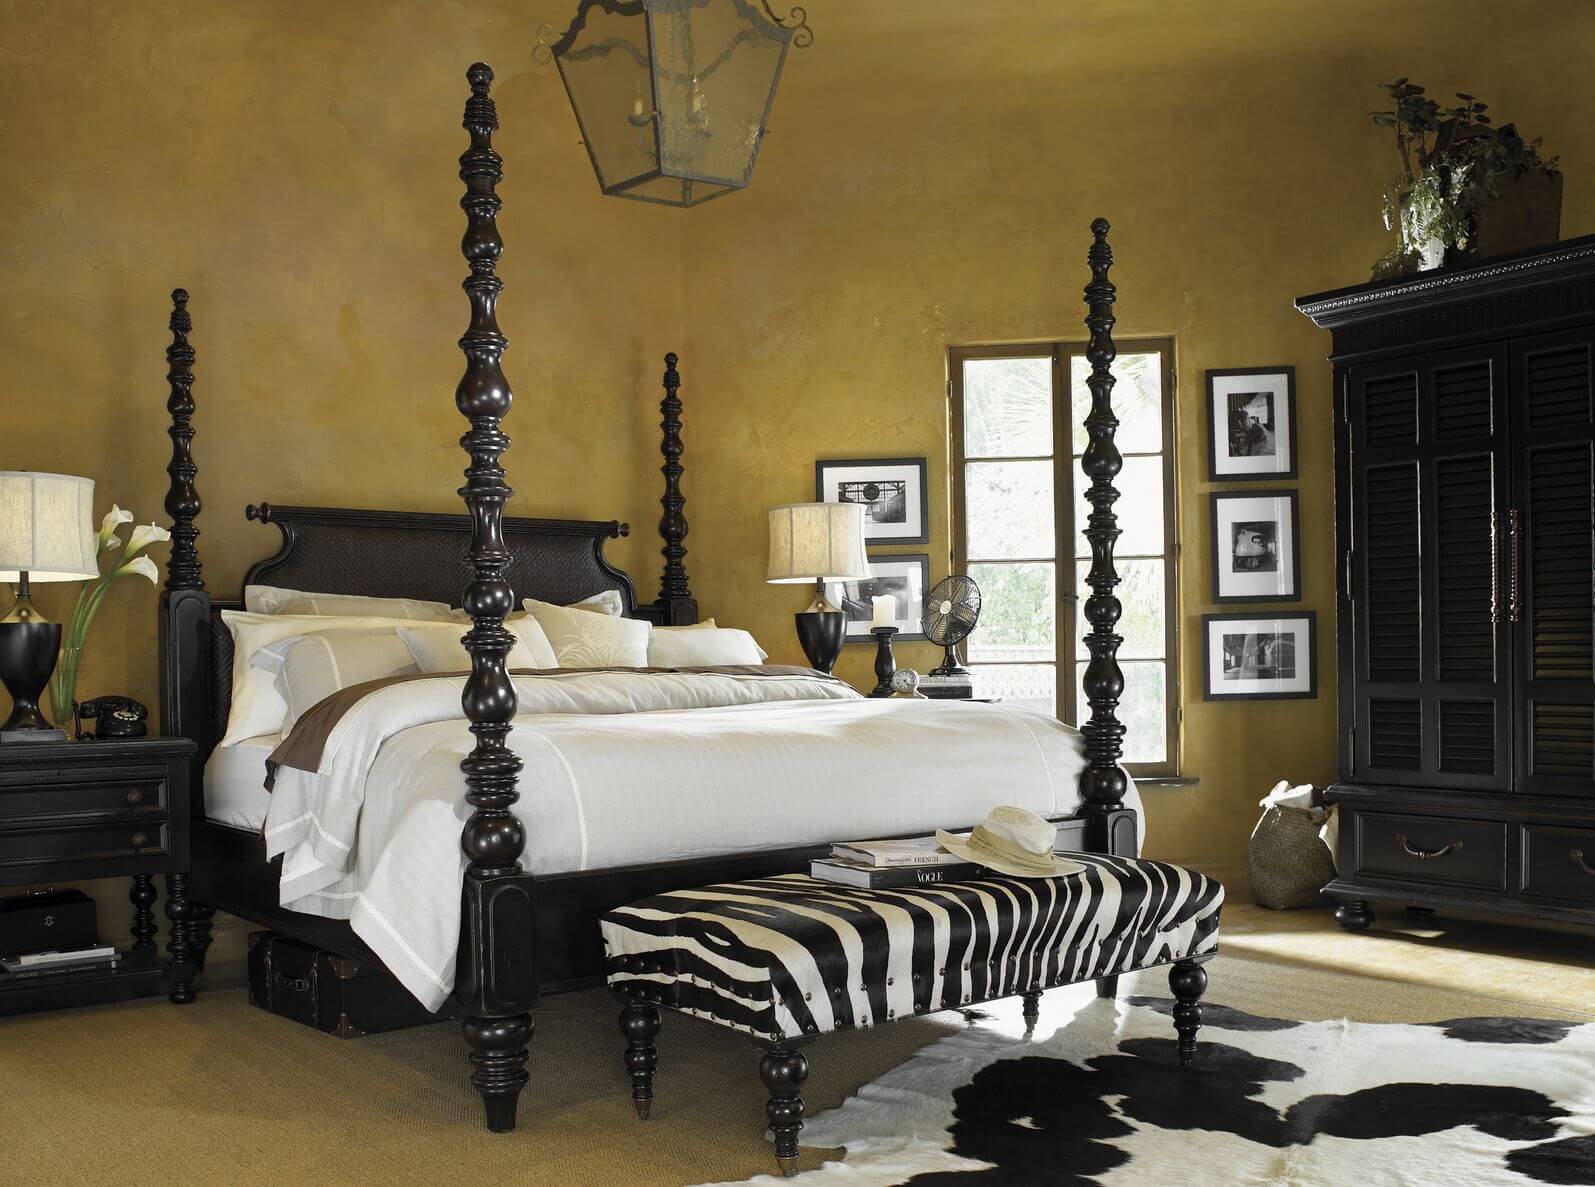 这是另一间狩猎风格的卧室，绝对不会太豪华。事实上，它很有品味地将斑马印花与脚凳结合在一起。黑色和白色的印花设计继续与区域地毯。